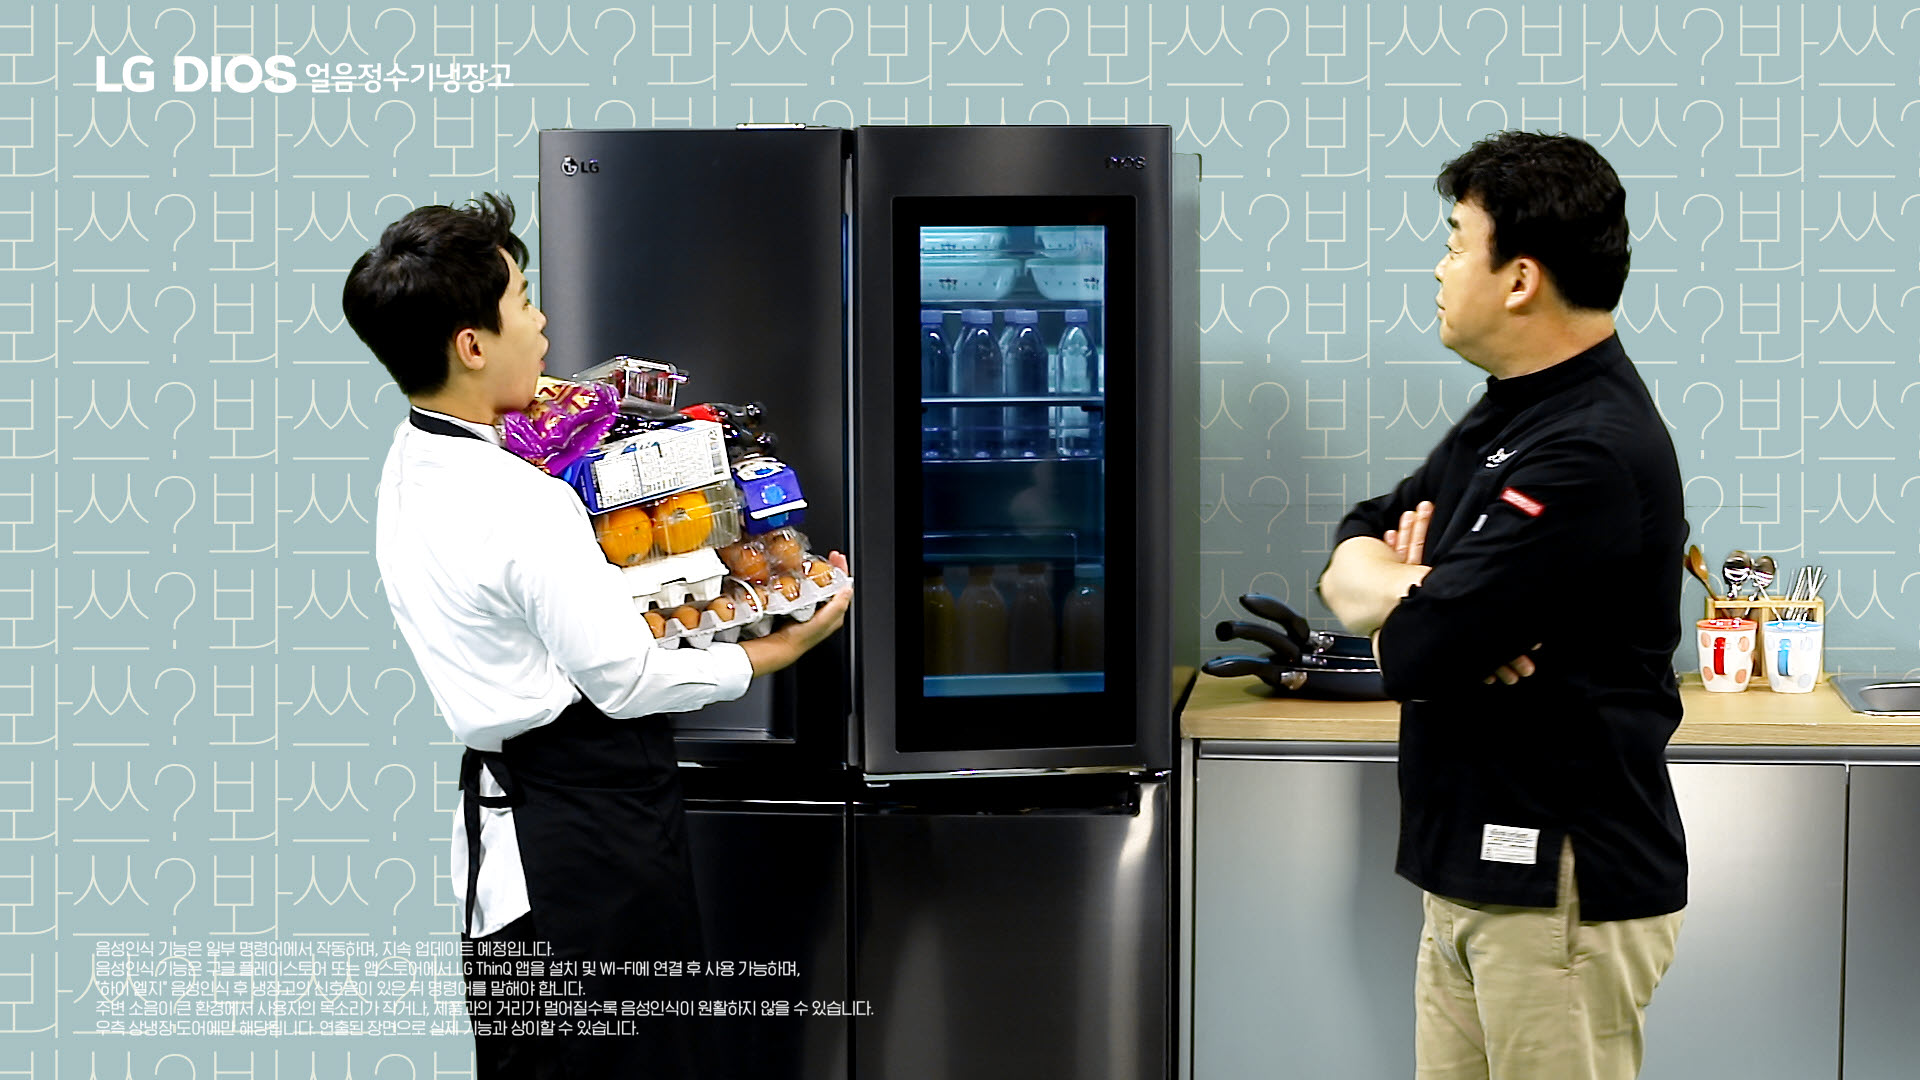 LG전자가 20일 방송인 백종원과 함께 LG 디오스 얼음정수기냉장고의 편리한 신기능을 소개하는 새로운 형식의 광고를 선보였다. 광고 속에서 백종원이 음성만으로 냉장고 문을 열자 양세형이 감탄하는 모습.